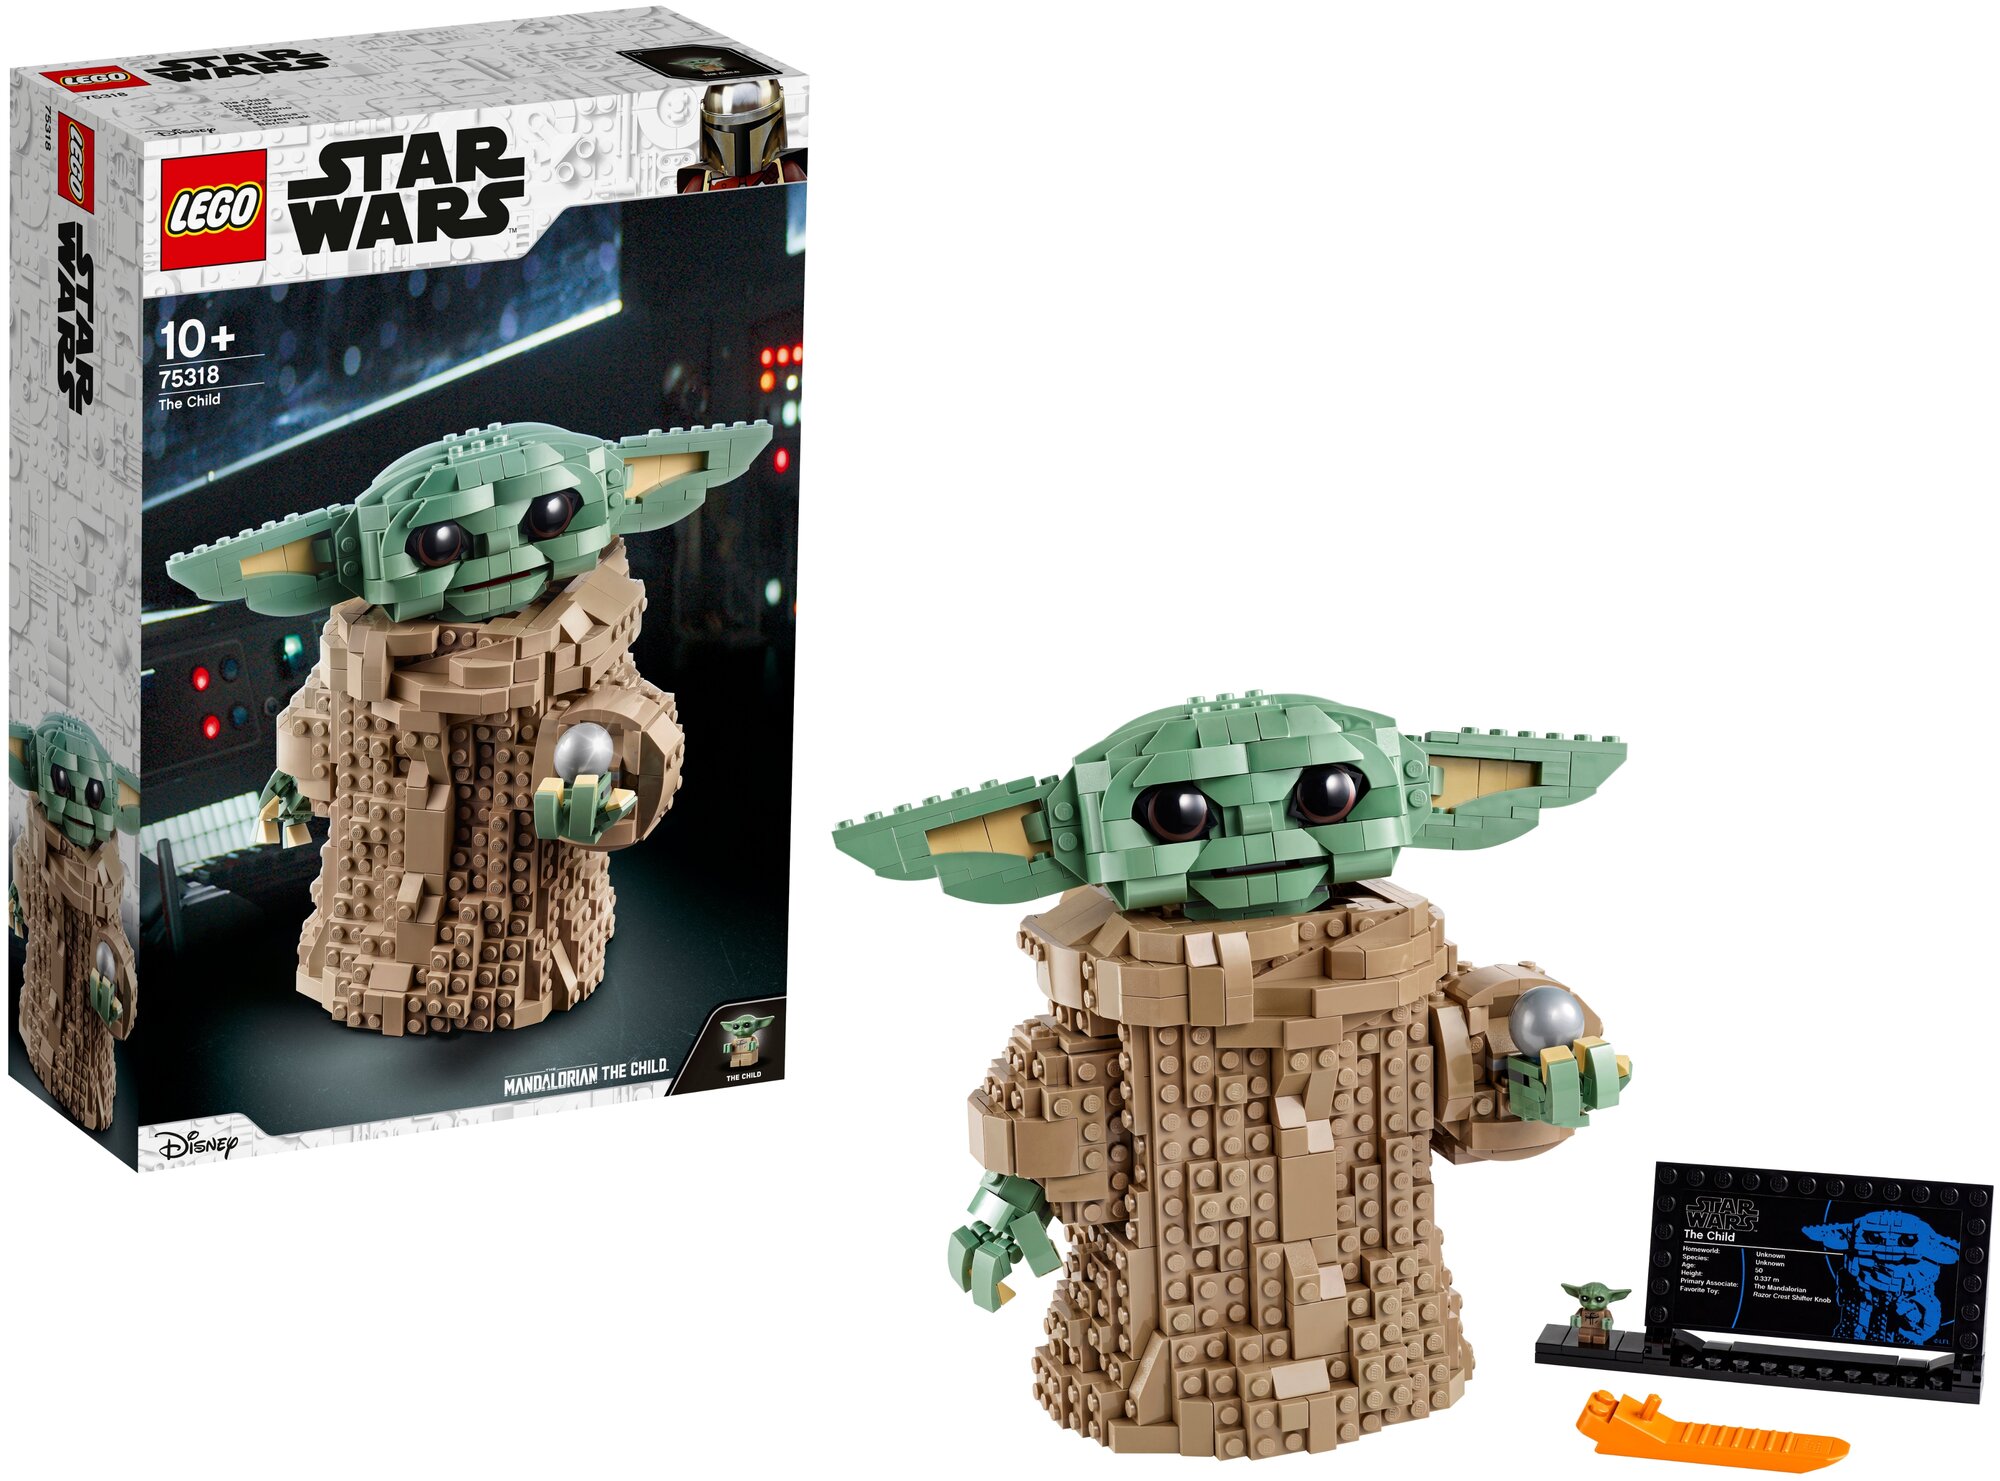 Конструктор LEGO Star Wars Звездный истребитель типа Х, 730 деталей (75318) - фото №3